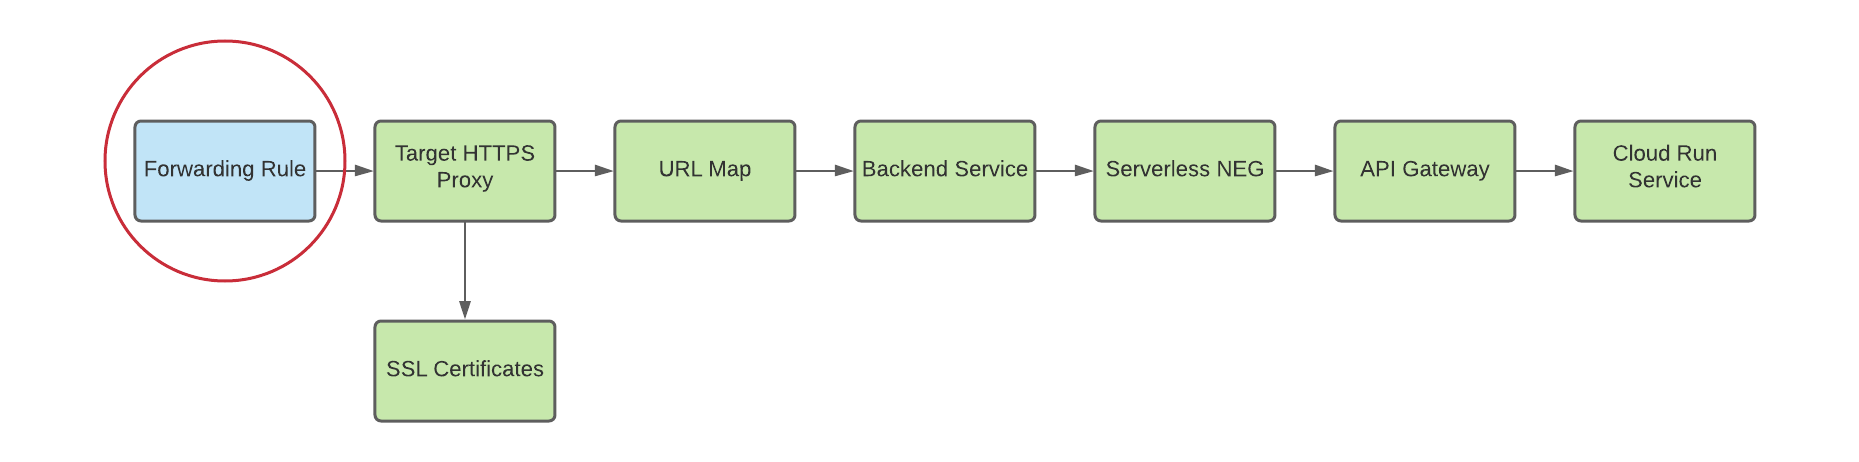 diagramma della regola di forwarding per proxy http